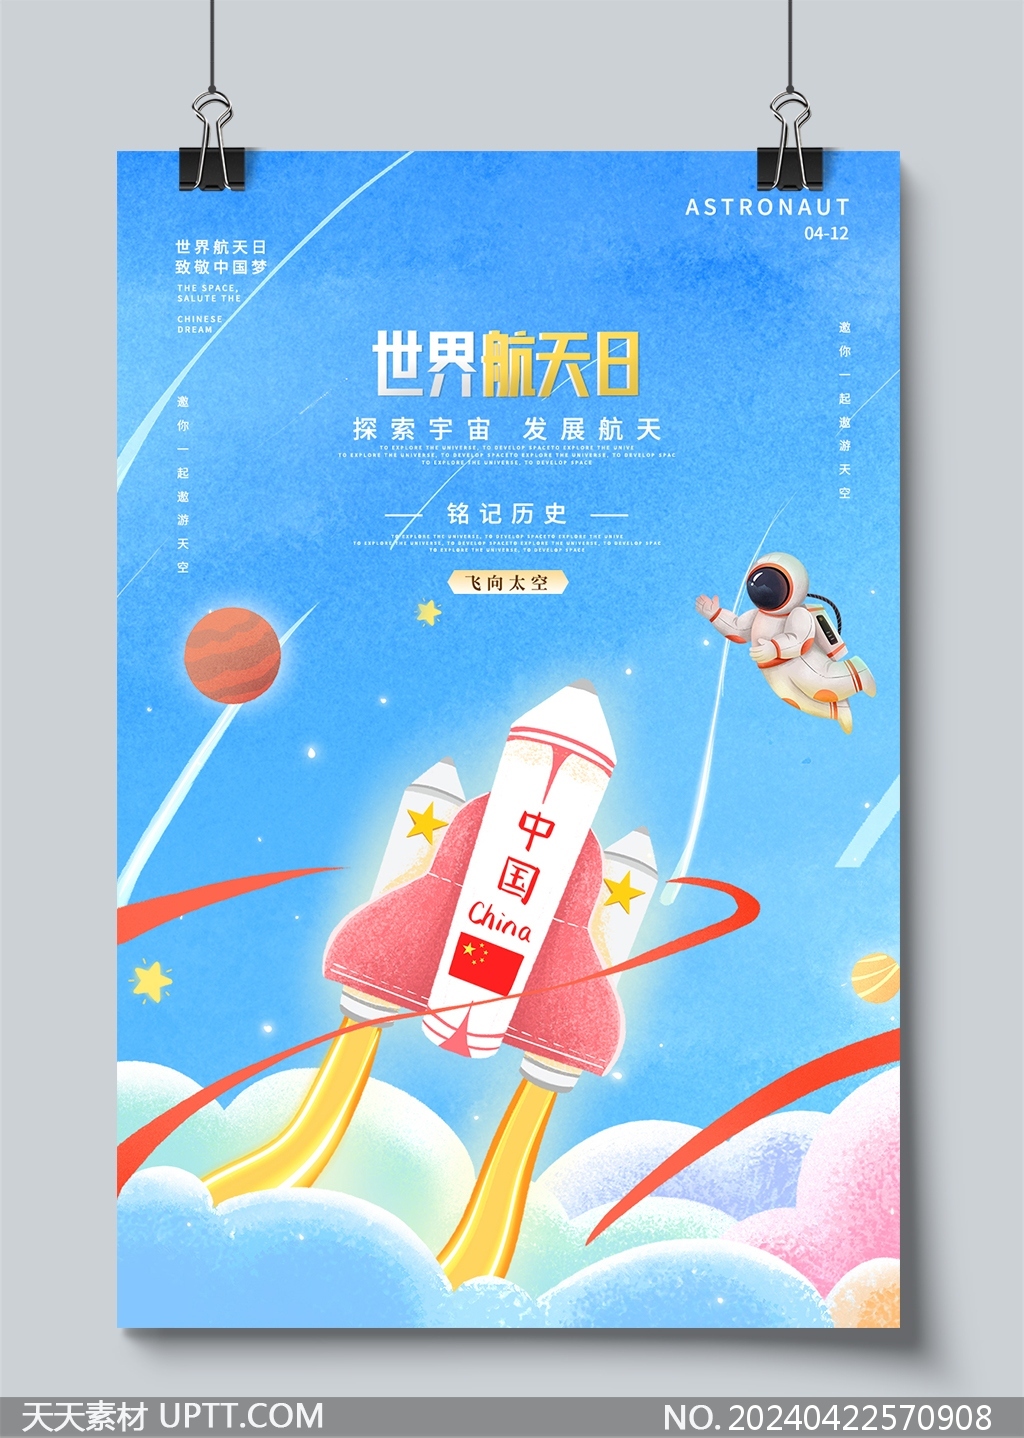 神州飞船宇航员儿童画风中国航天日海报设计